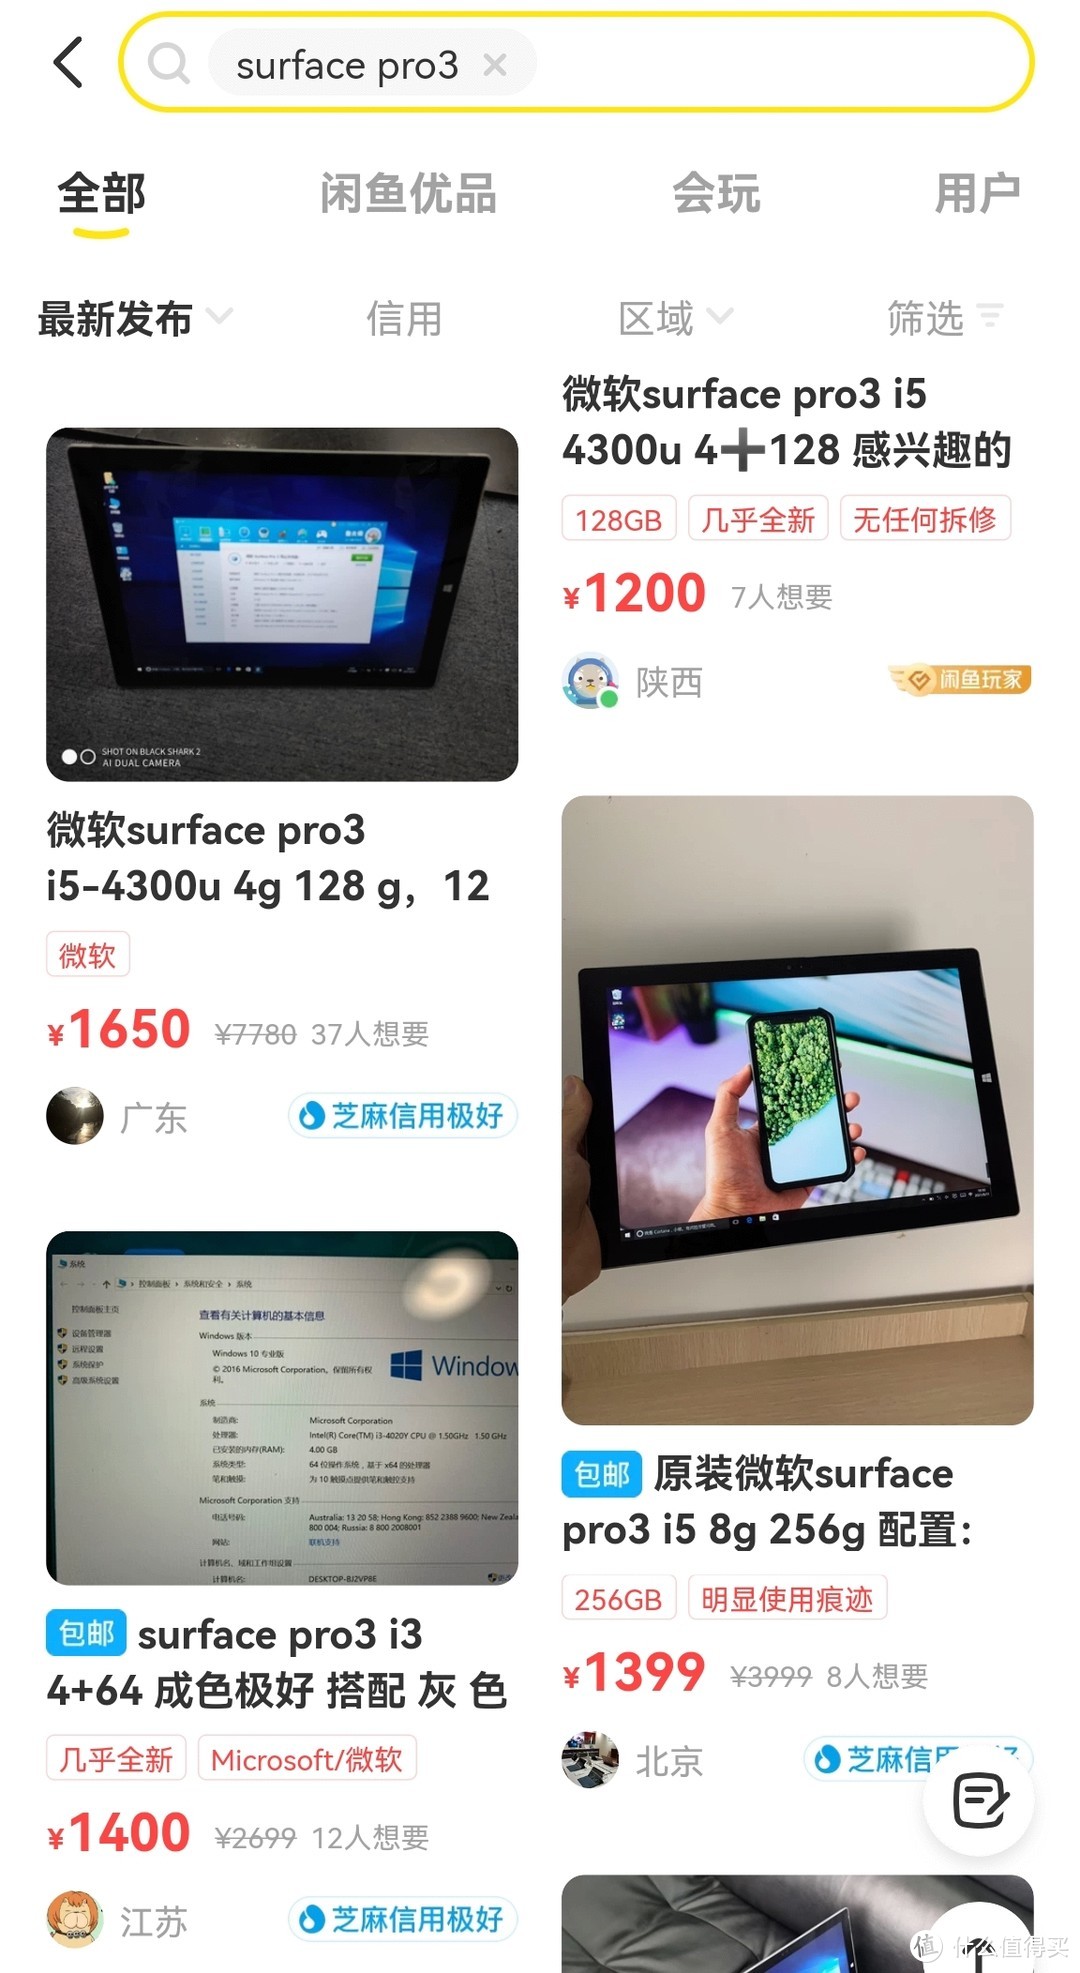 大概1200-1500能买到一台Surface Pro3，当初的万元机啊♥